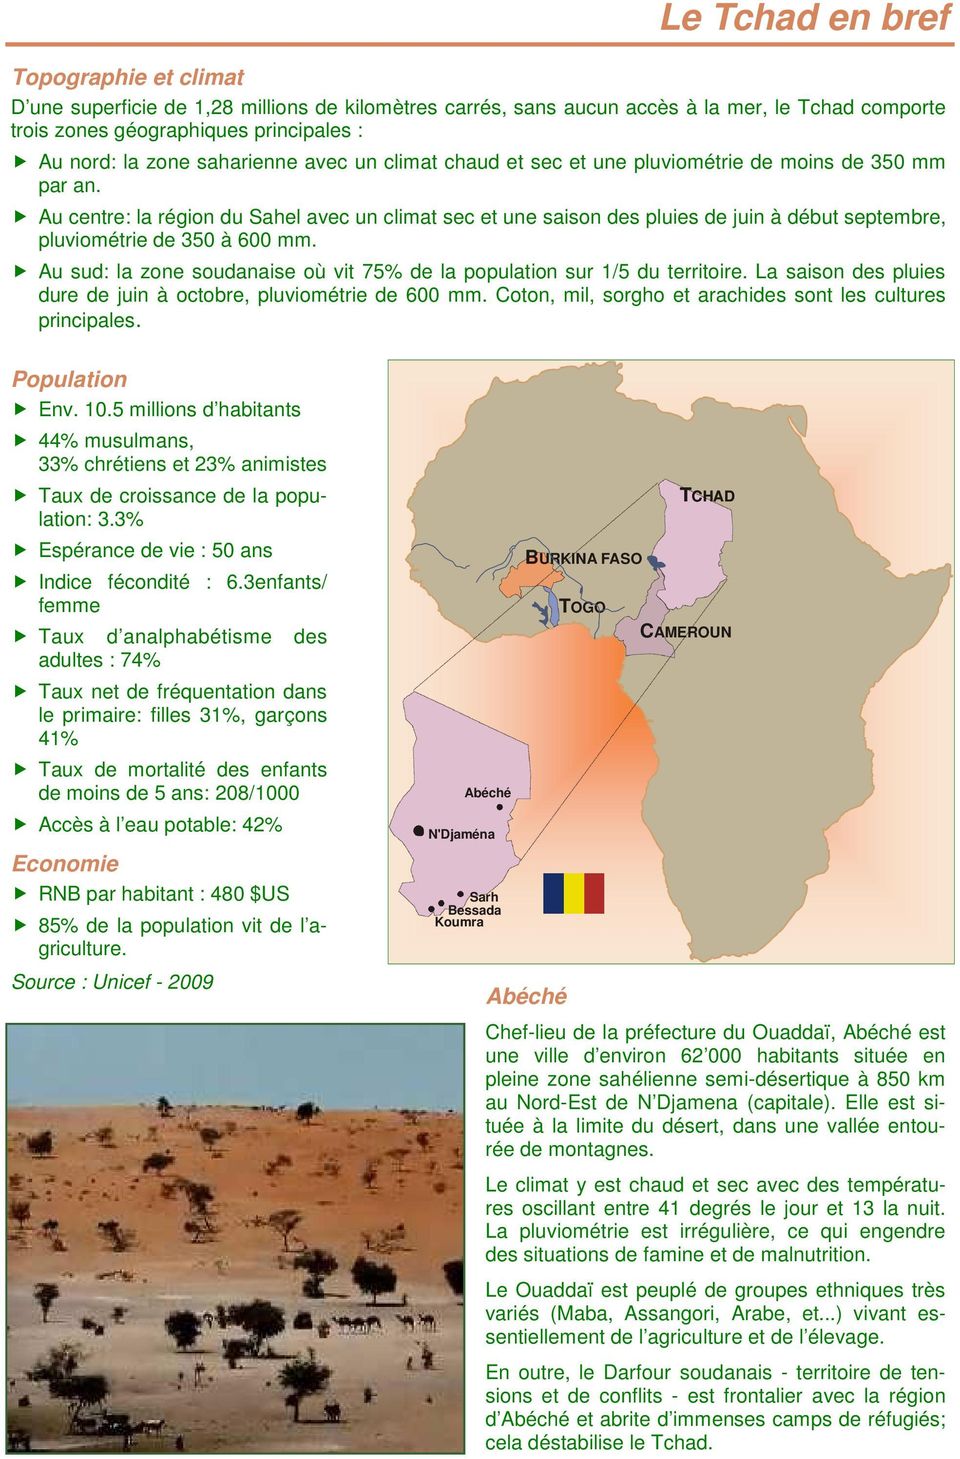 Au centre: la région du Sahel avec un climat sec et une saison des pluies de juin à début septembre, pluviométrie de 350 à 600 mm.